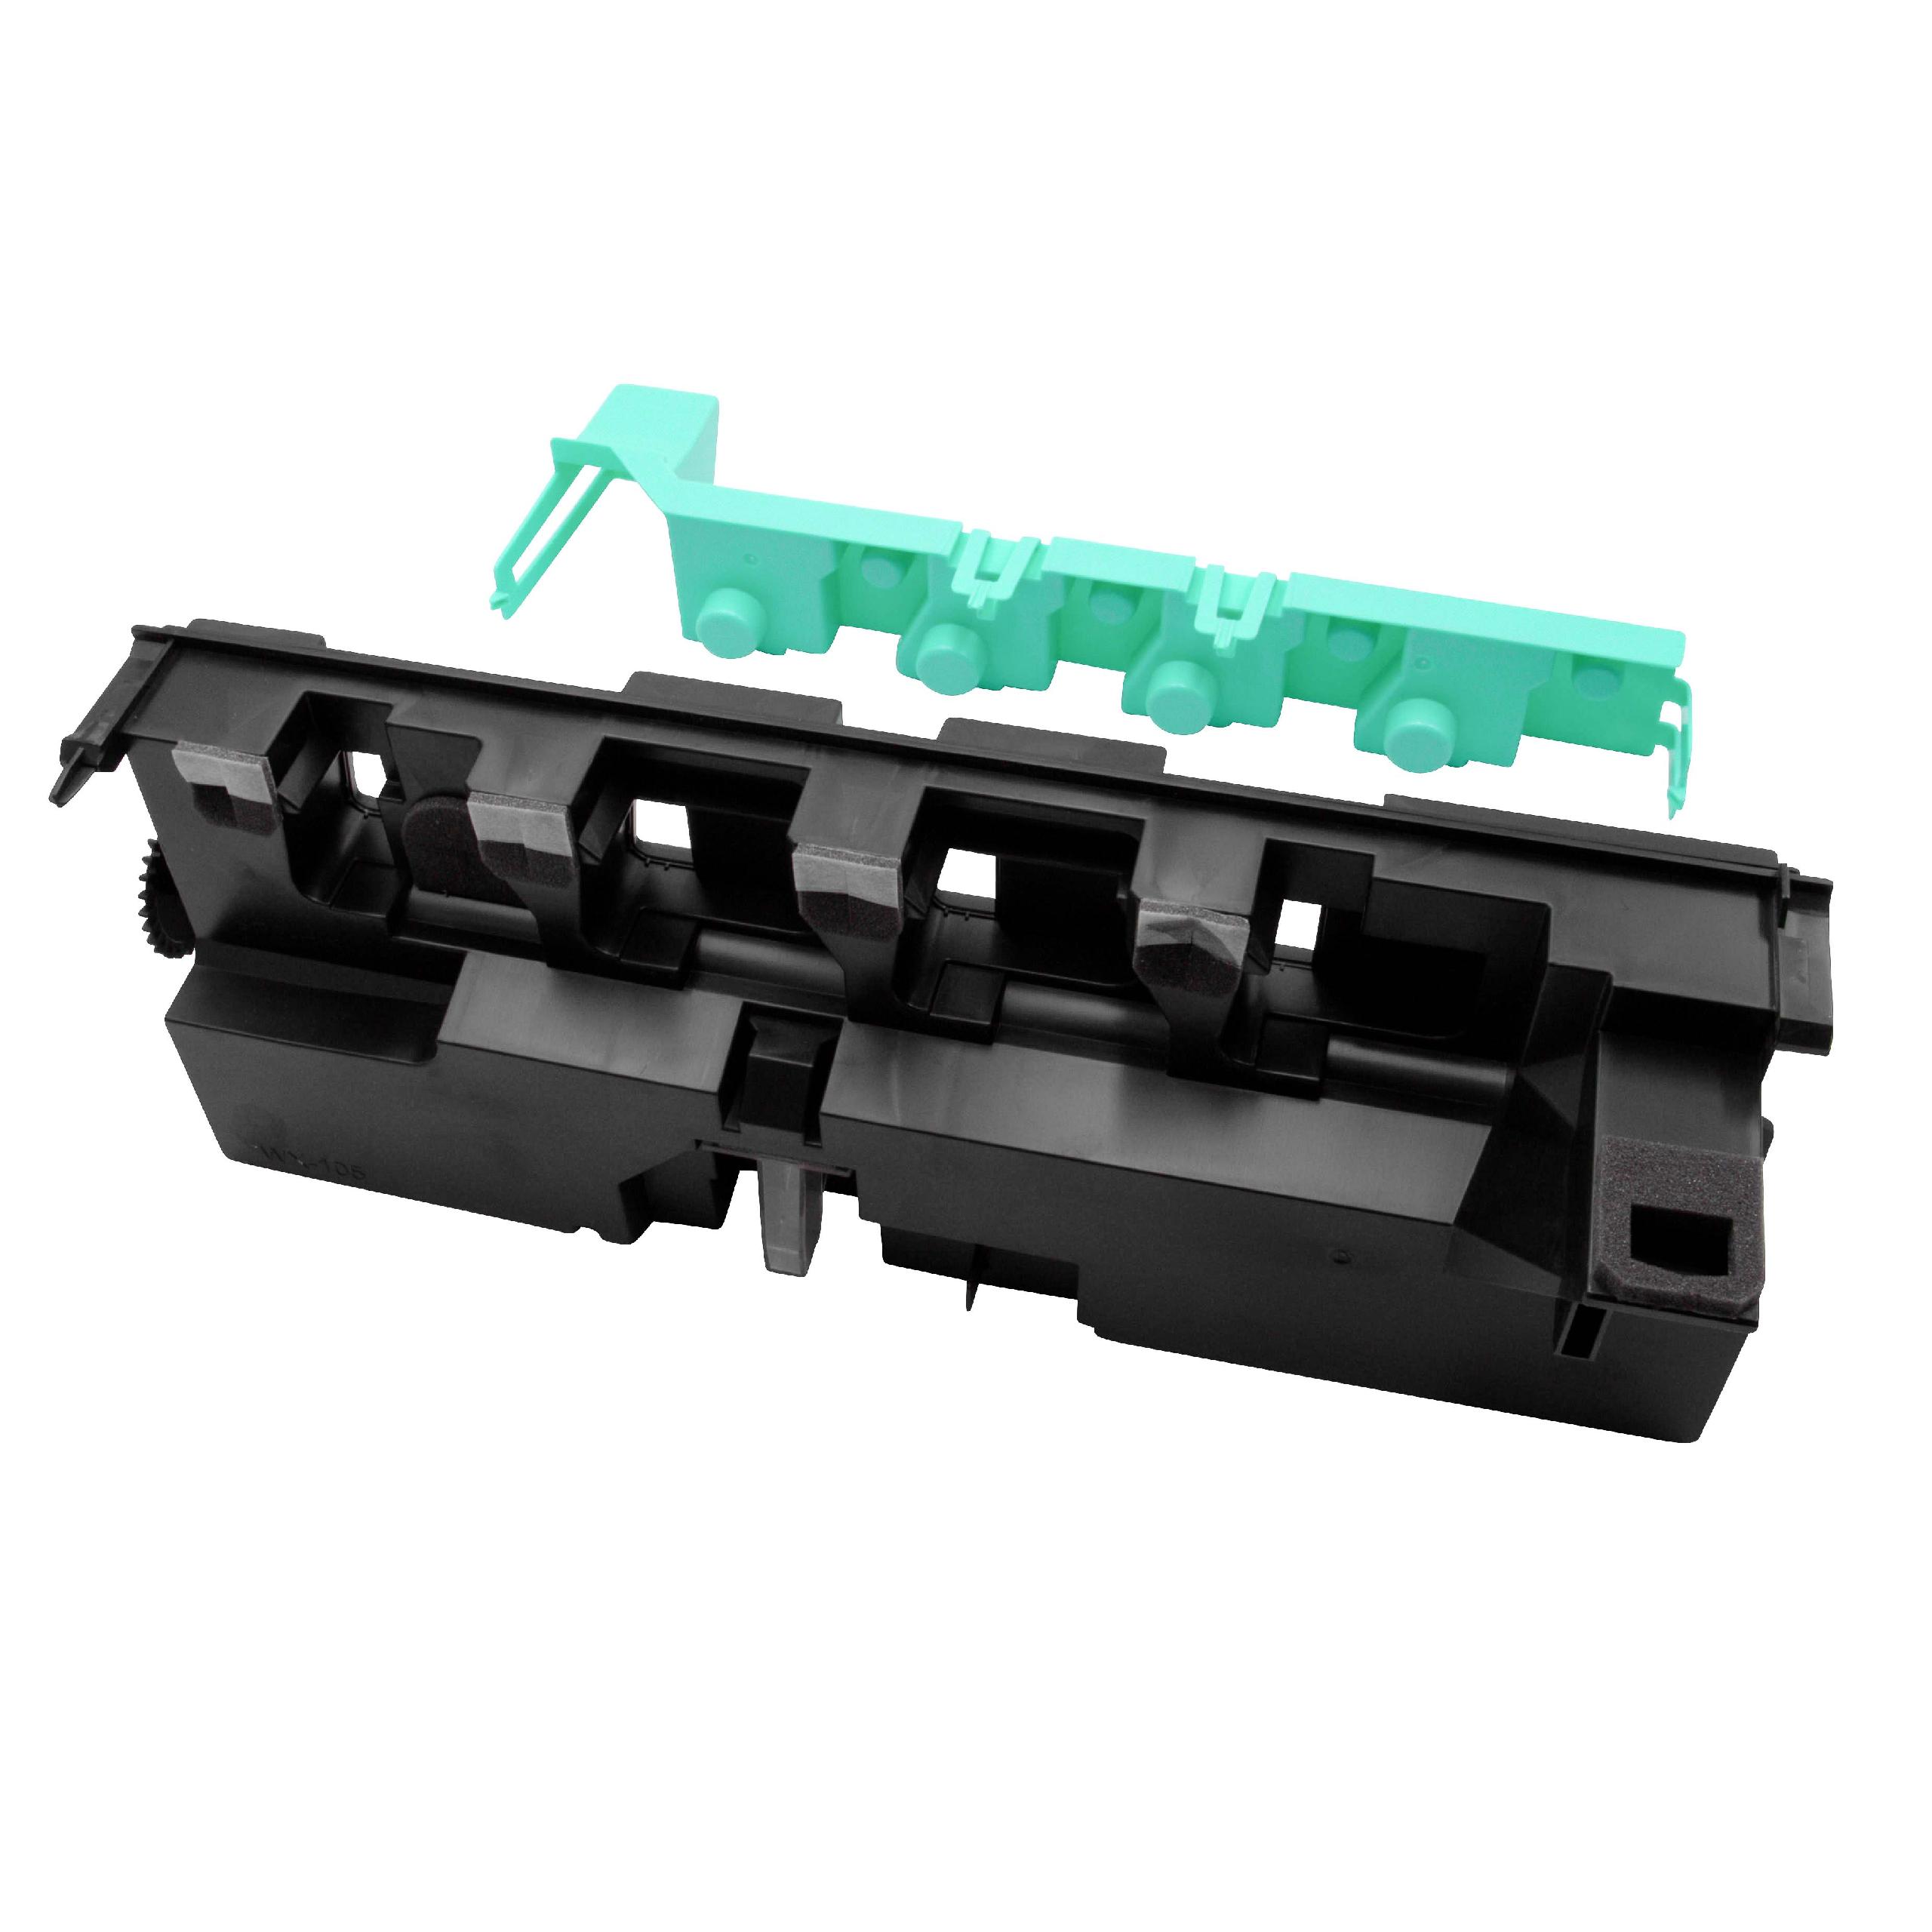 Pojemnik na zużyty toner do drukarki zam. Konica Minolta WX-105, A8JJ-WY1 - czarny